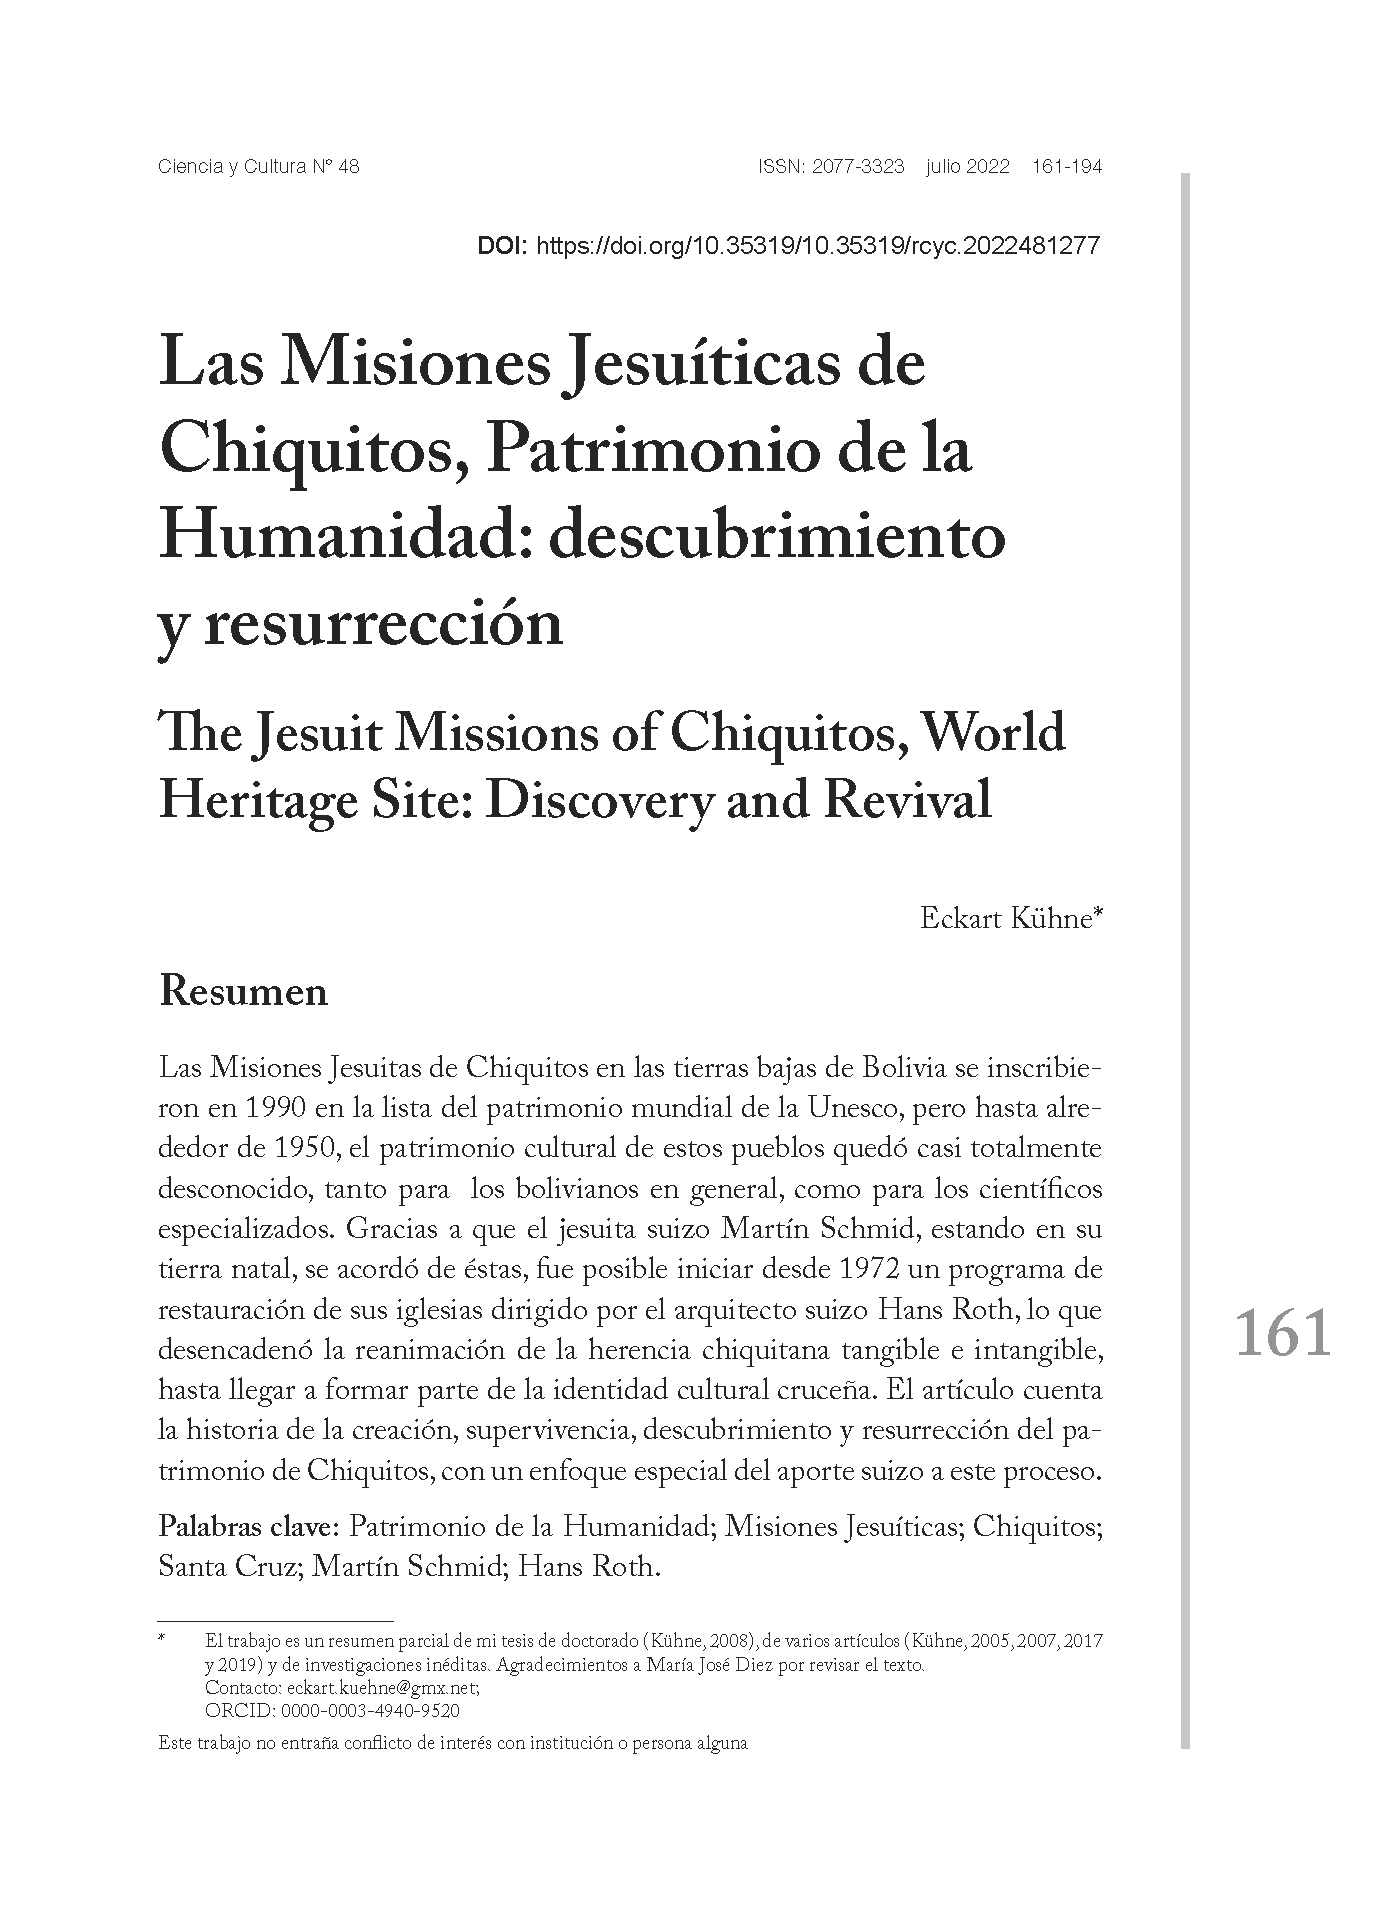 Las Misiones Jesuíticas de Chiquitos, Patrimonio de la Humanidad: descubrimiento y resurrección